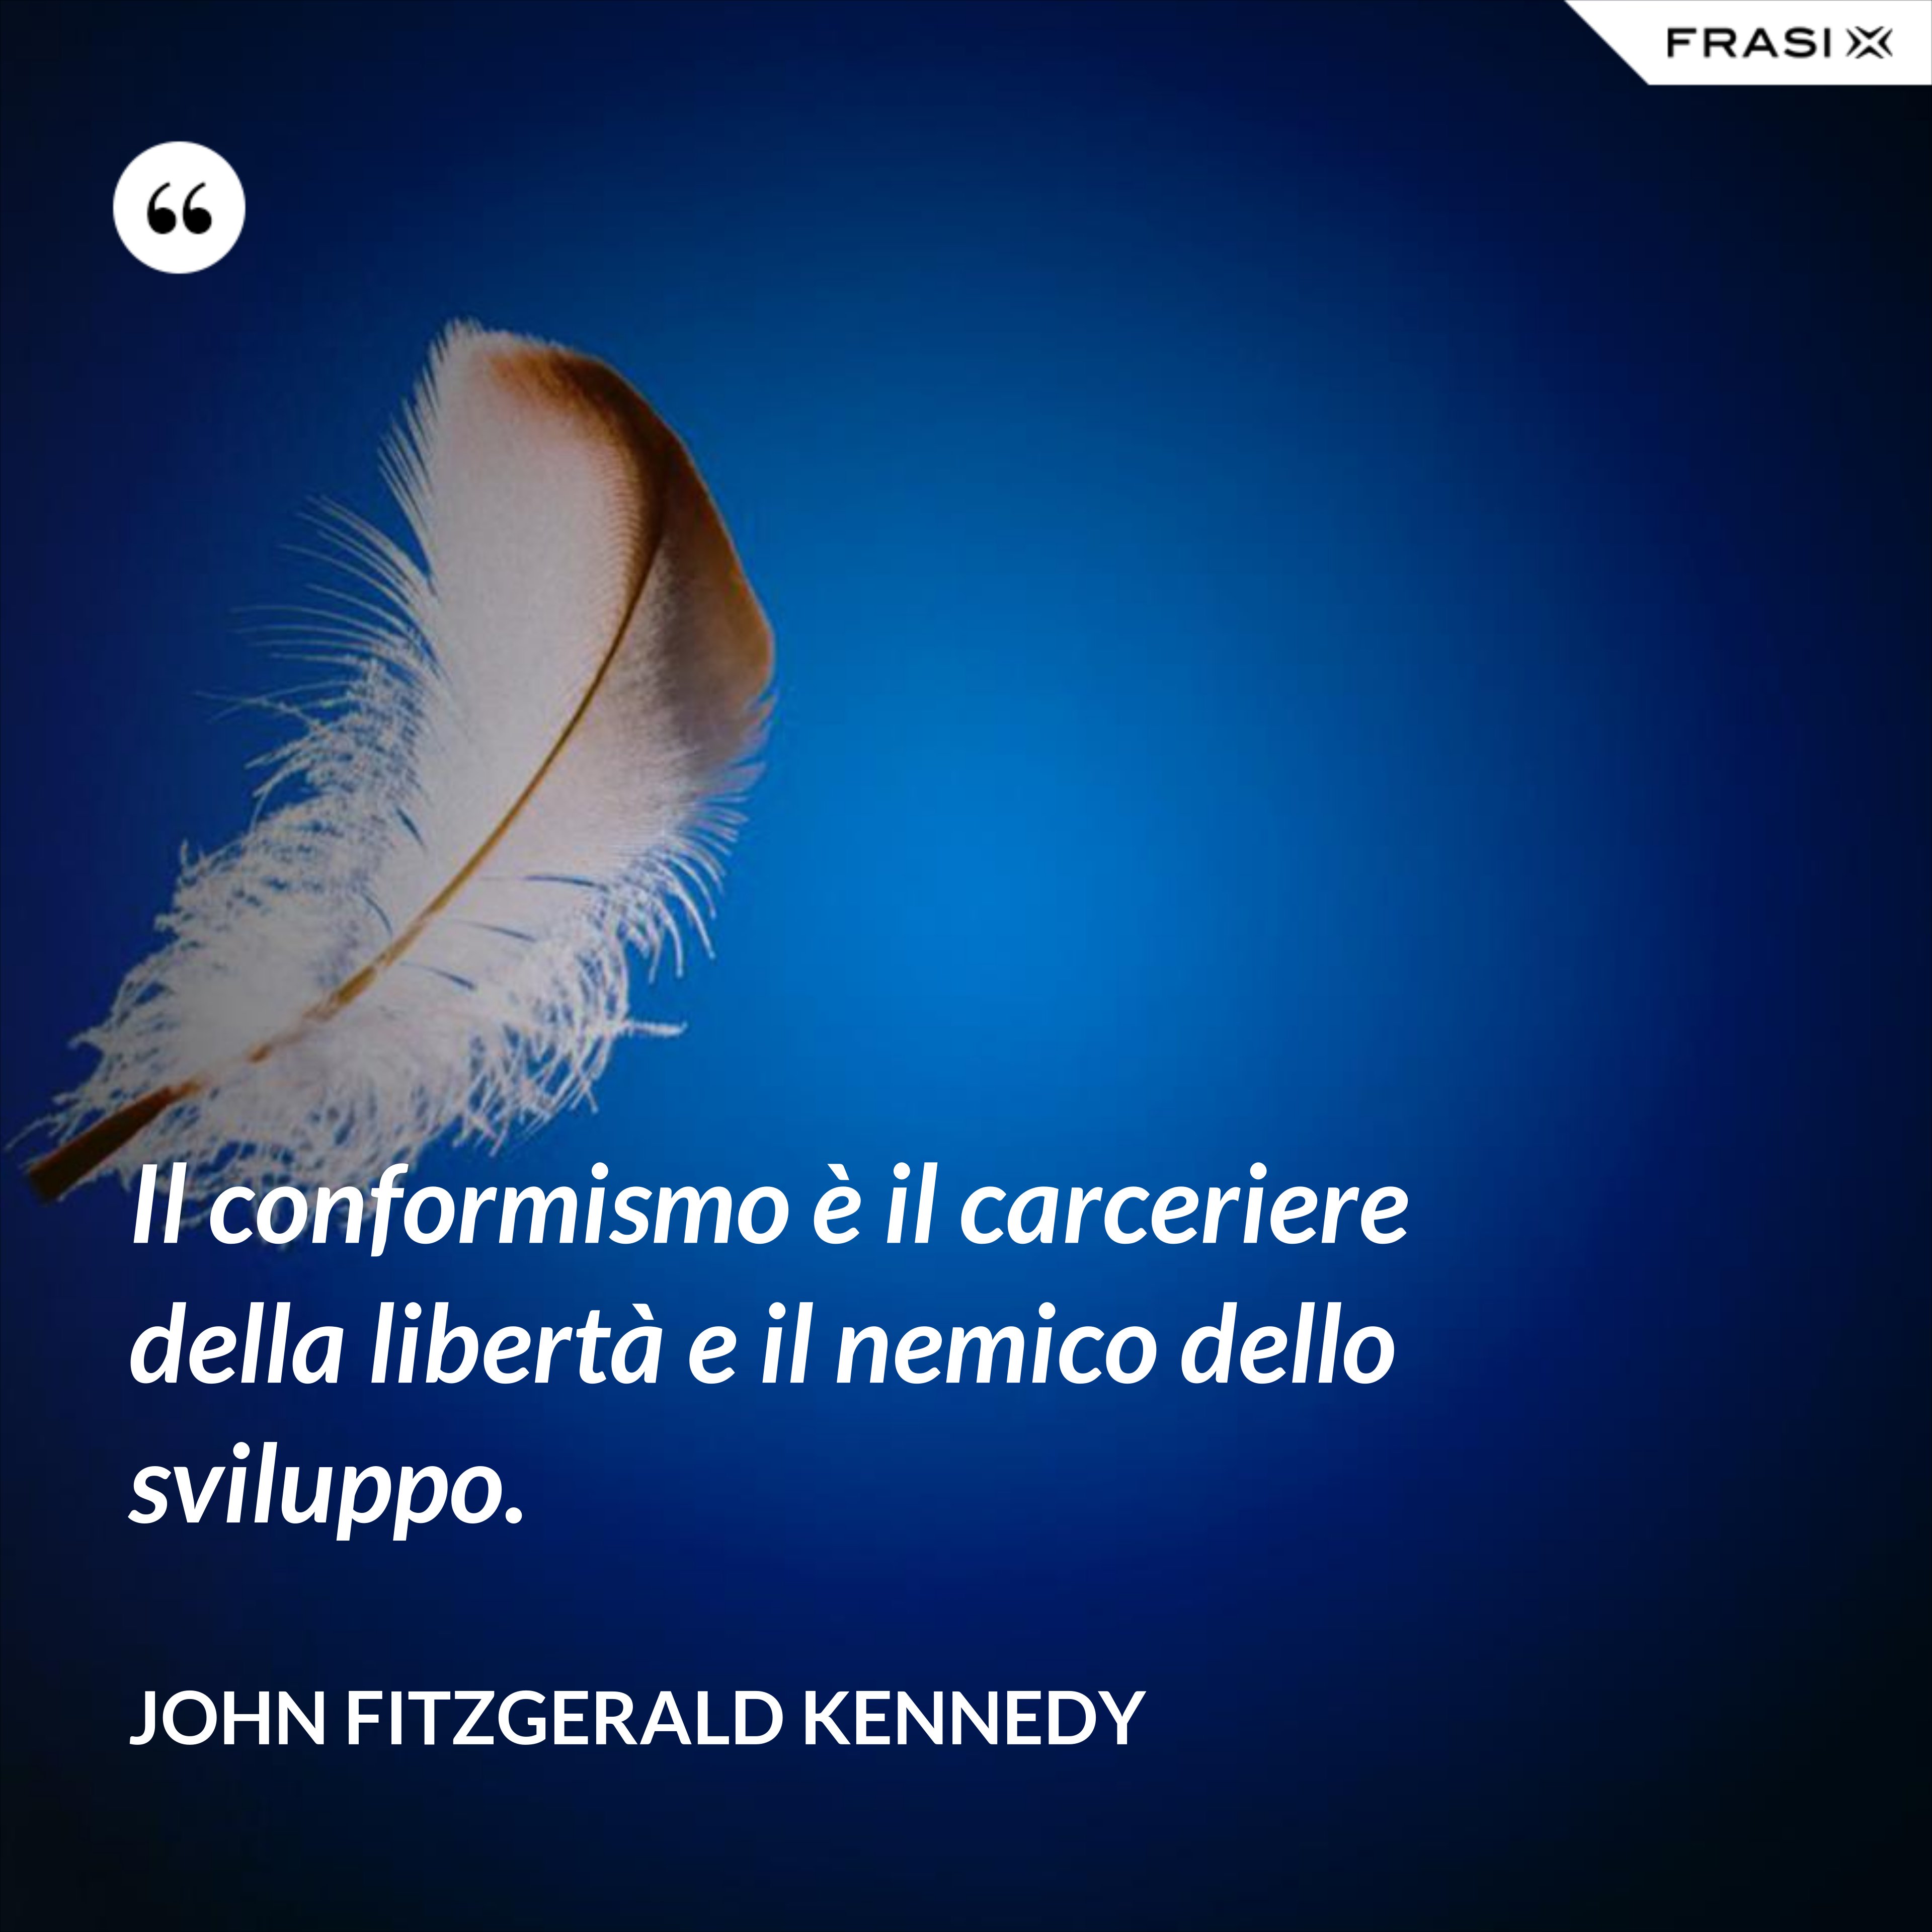 Il conformismo è il carceriere della libertà e il nemico dello sviluppo. - John Fitzgerald Kennedy